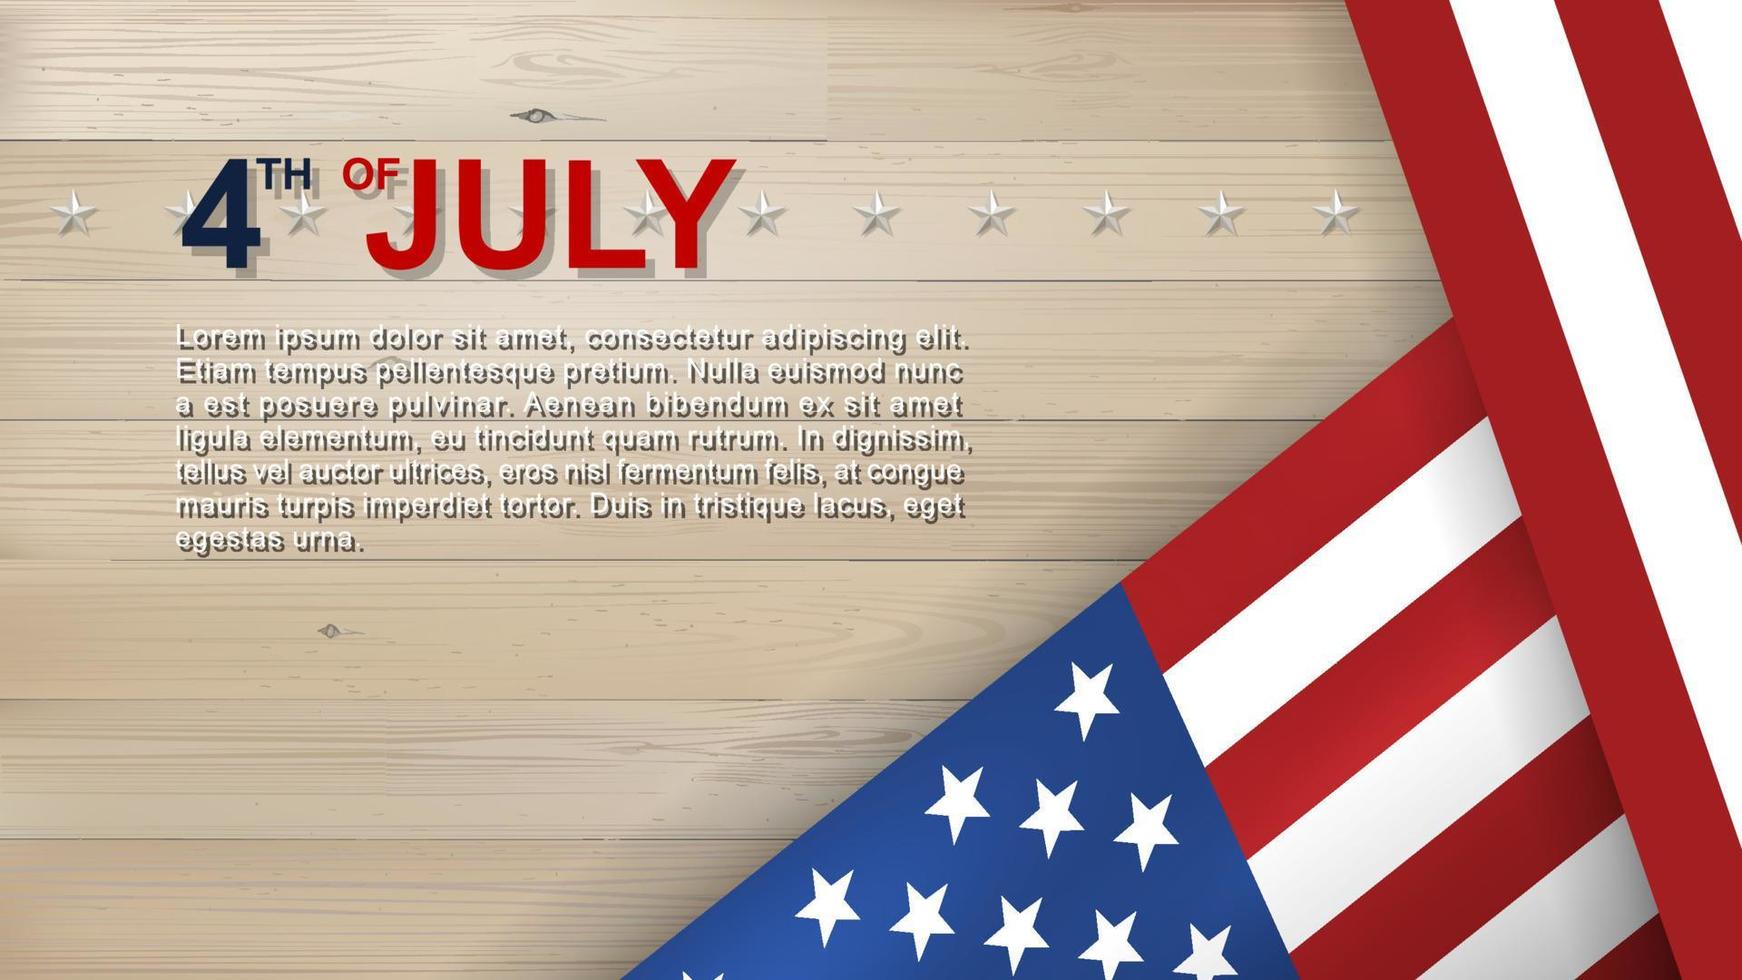 Fondo del 4 de julio para el día de la independencia de estados unidos con fondo azul y bandera americana. vector. vector